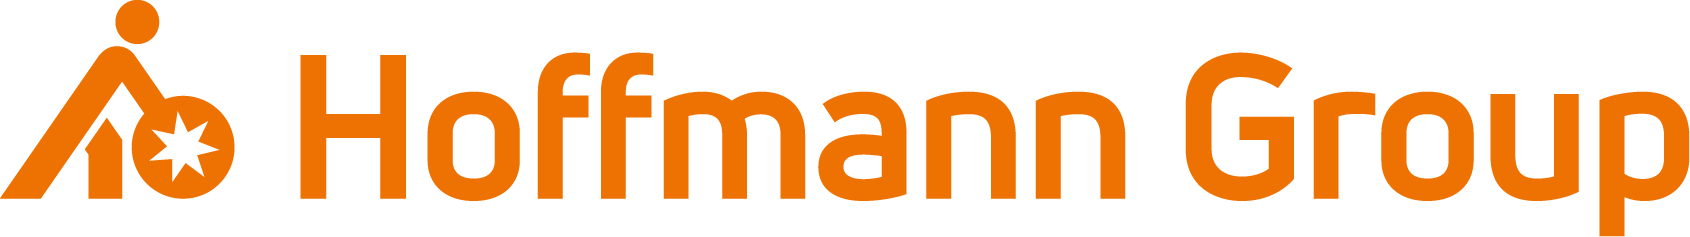 Logo Hoffmann GMBH - Udstiller på Spånligaen 2020